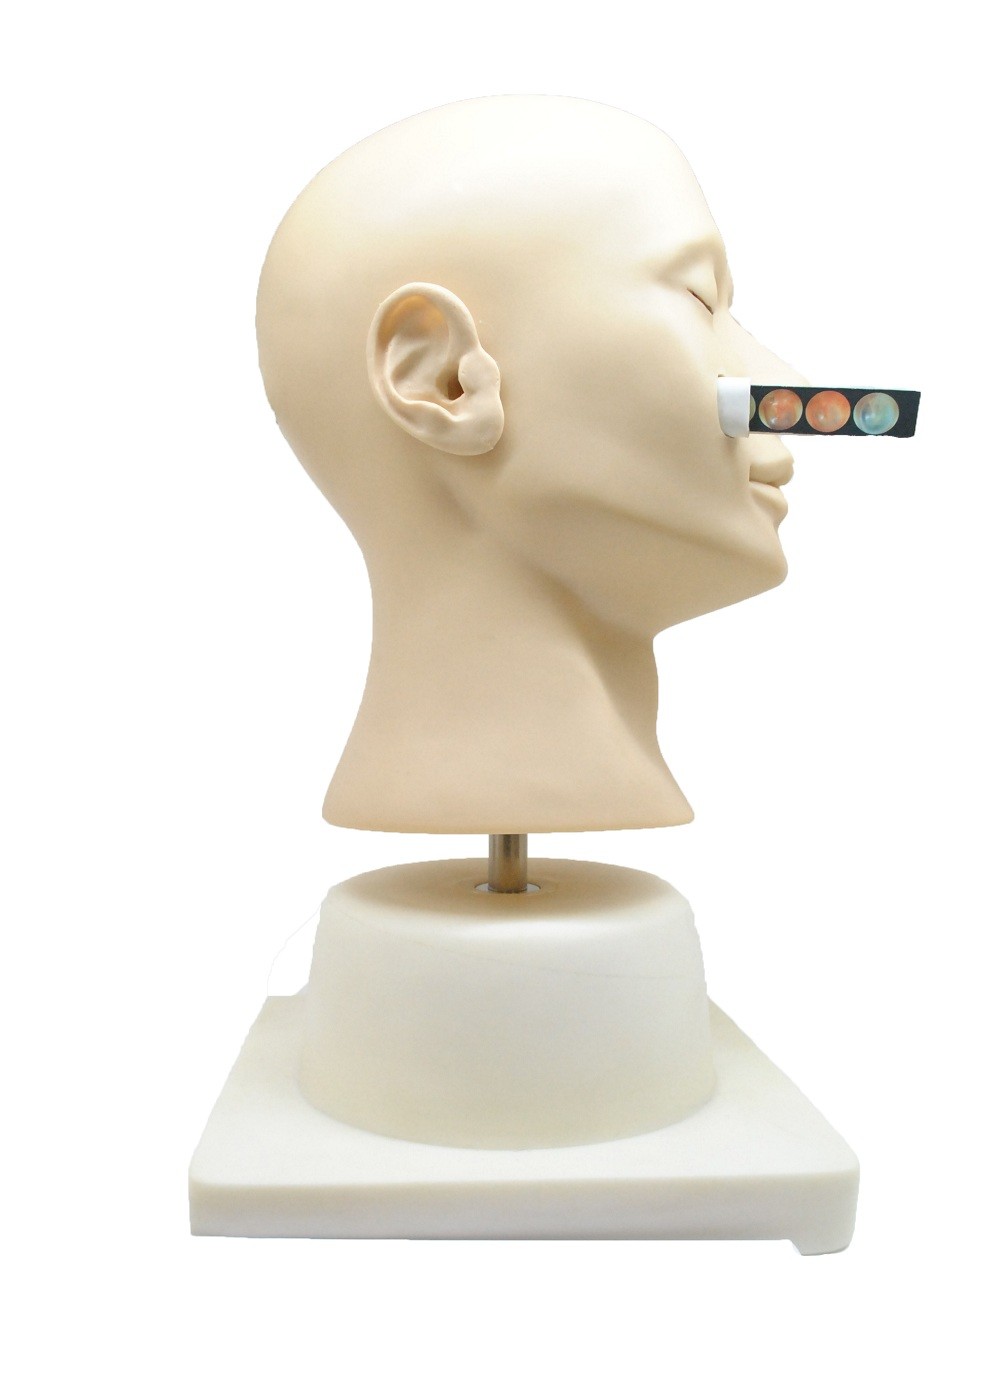 Muñeca nasal del entrenamiento de la hemorragia de la simulación clínica avanzada para la universidad, hospital